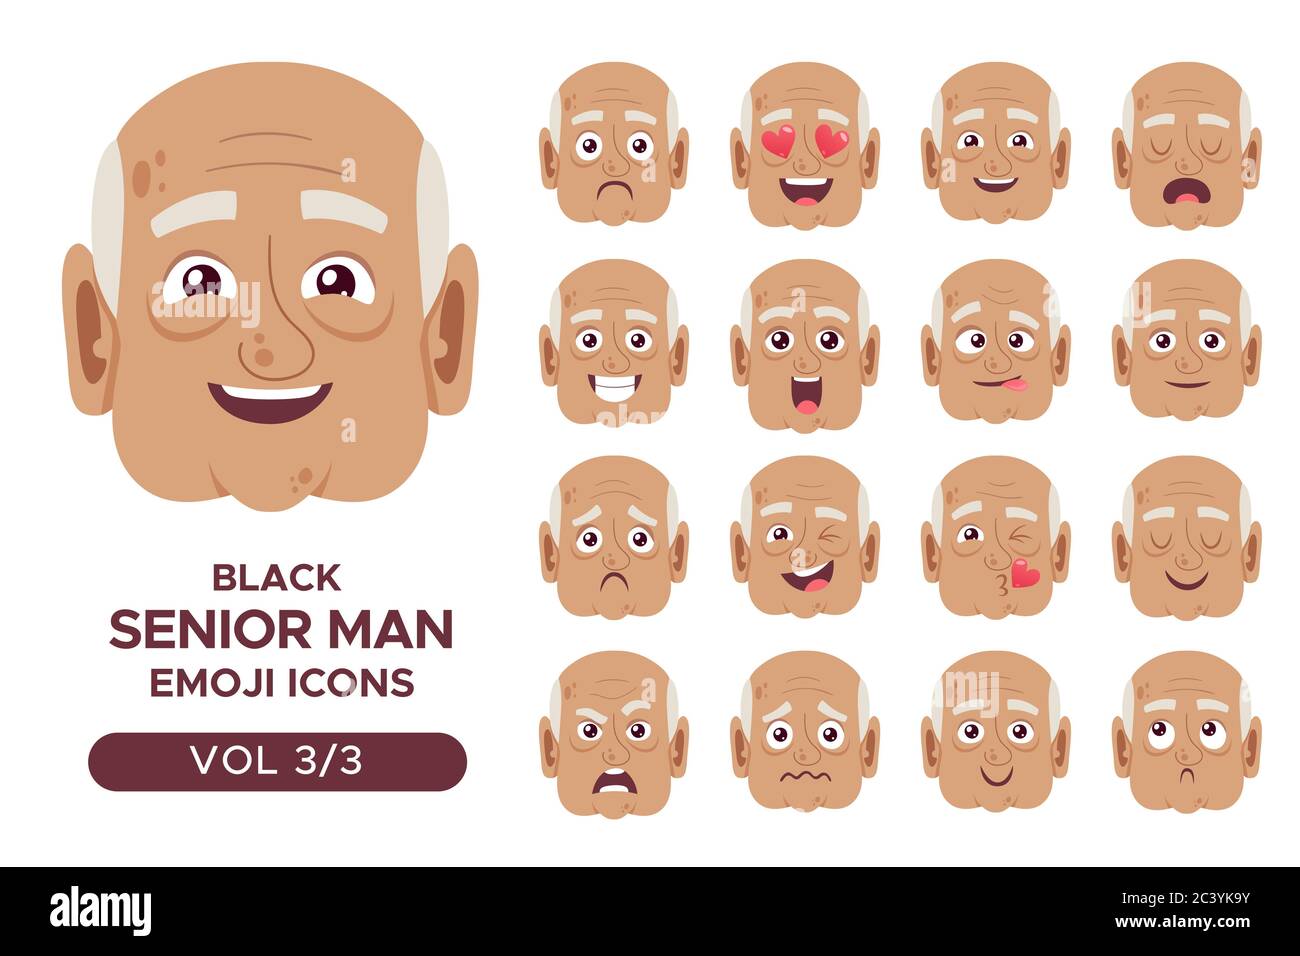 Ensemble d'avatar pour émotion faciale masculin. Personnage blanc d'homme senior avec des expressions différentes. Illustration vectorielle en style dessin animé. Jeu 3 sur 3. Illustration de Vecteur